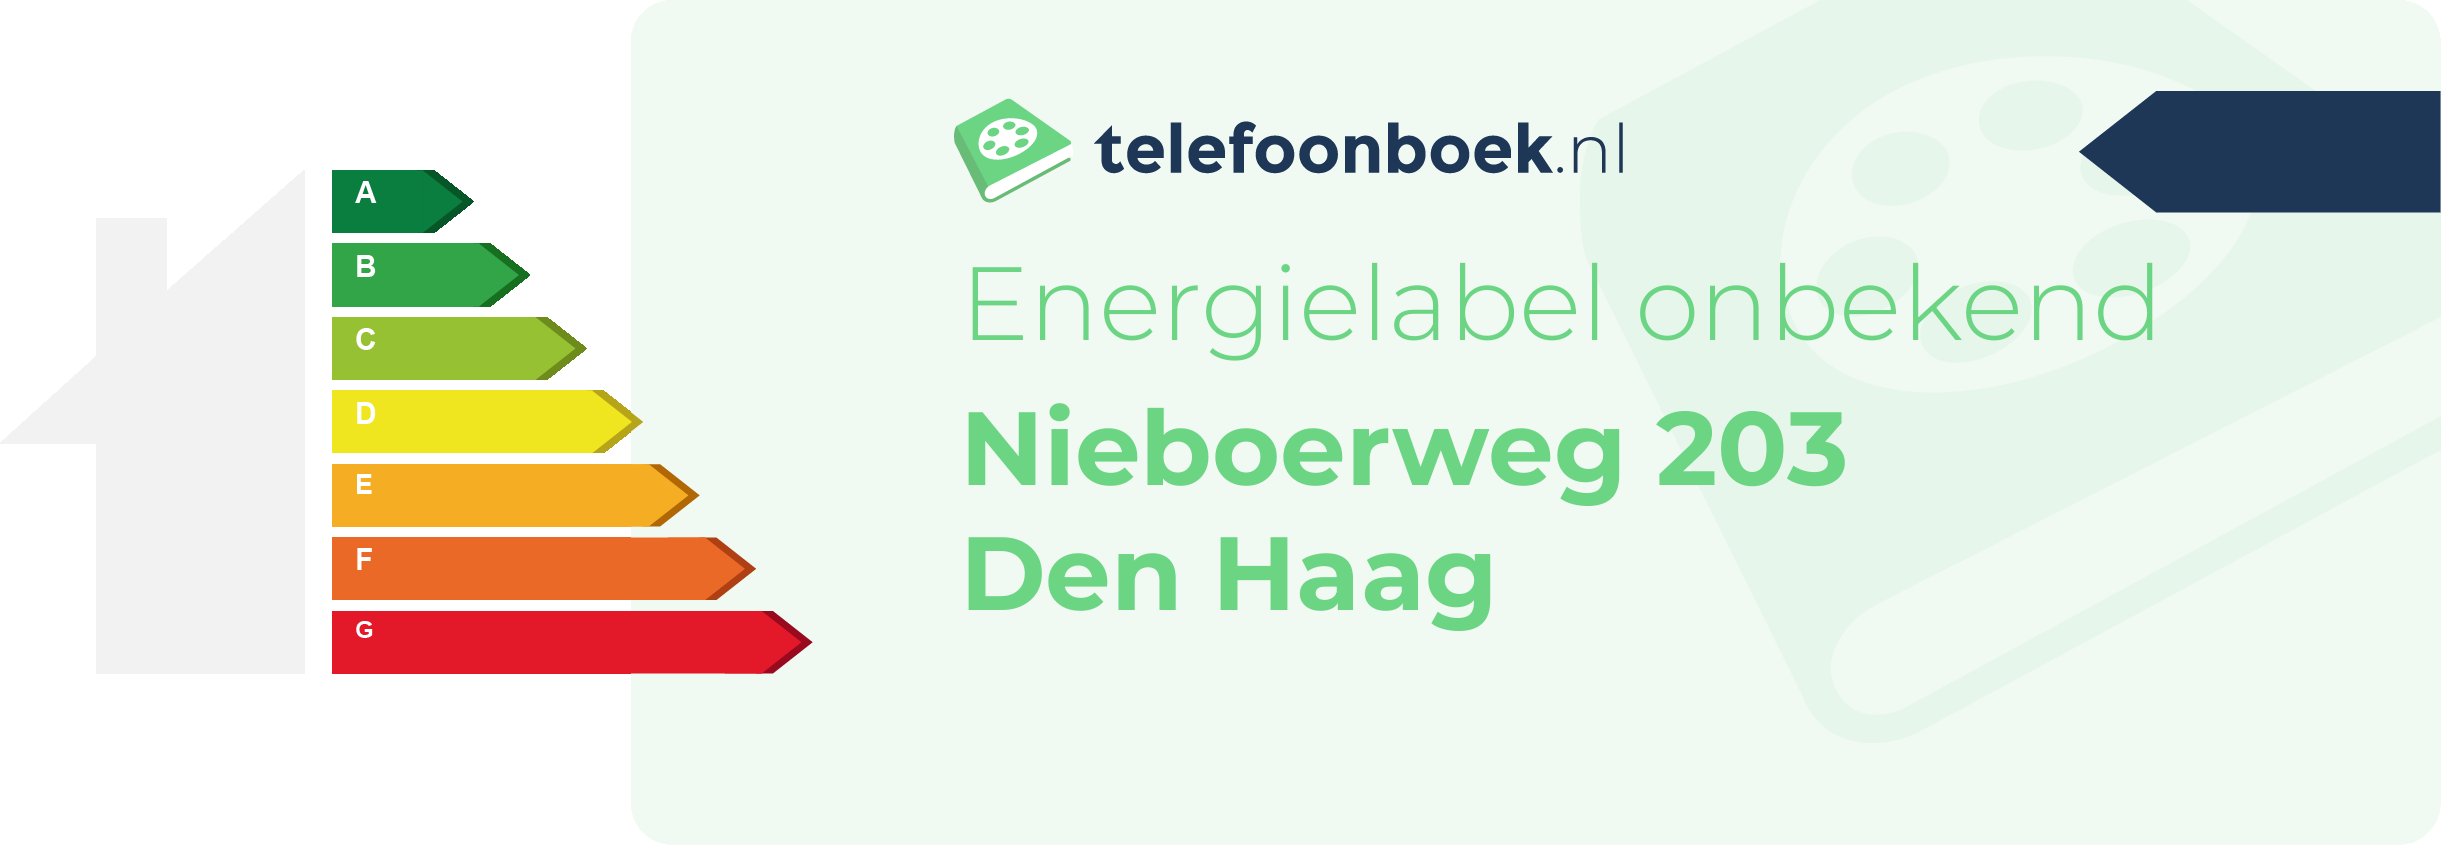 Energielabel Nieboerweg 203 Den Haag